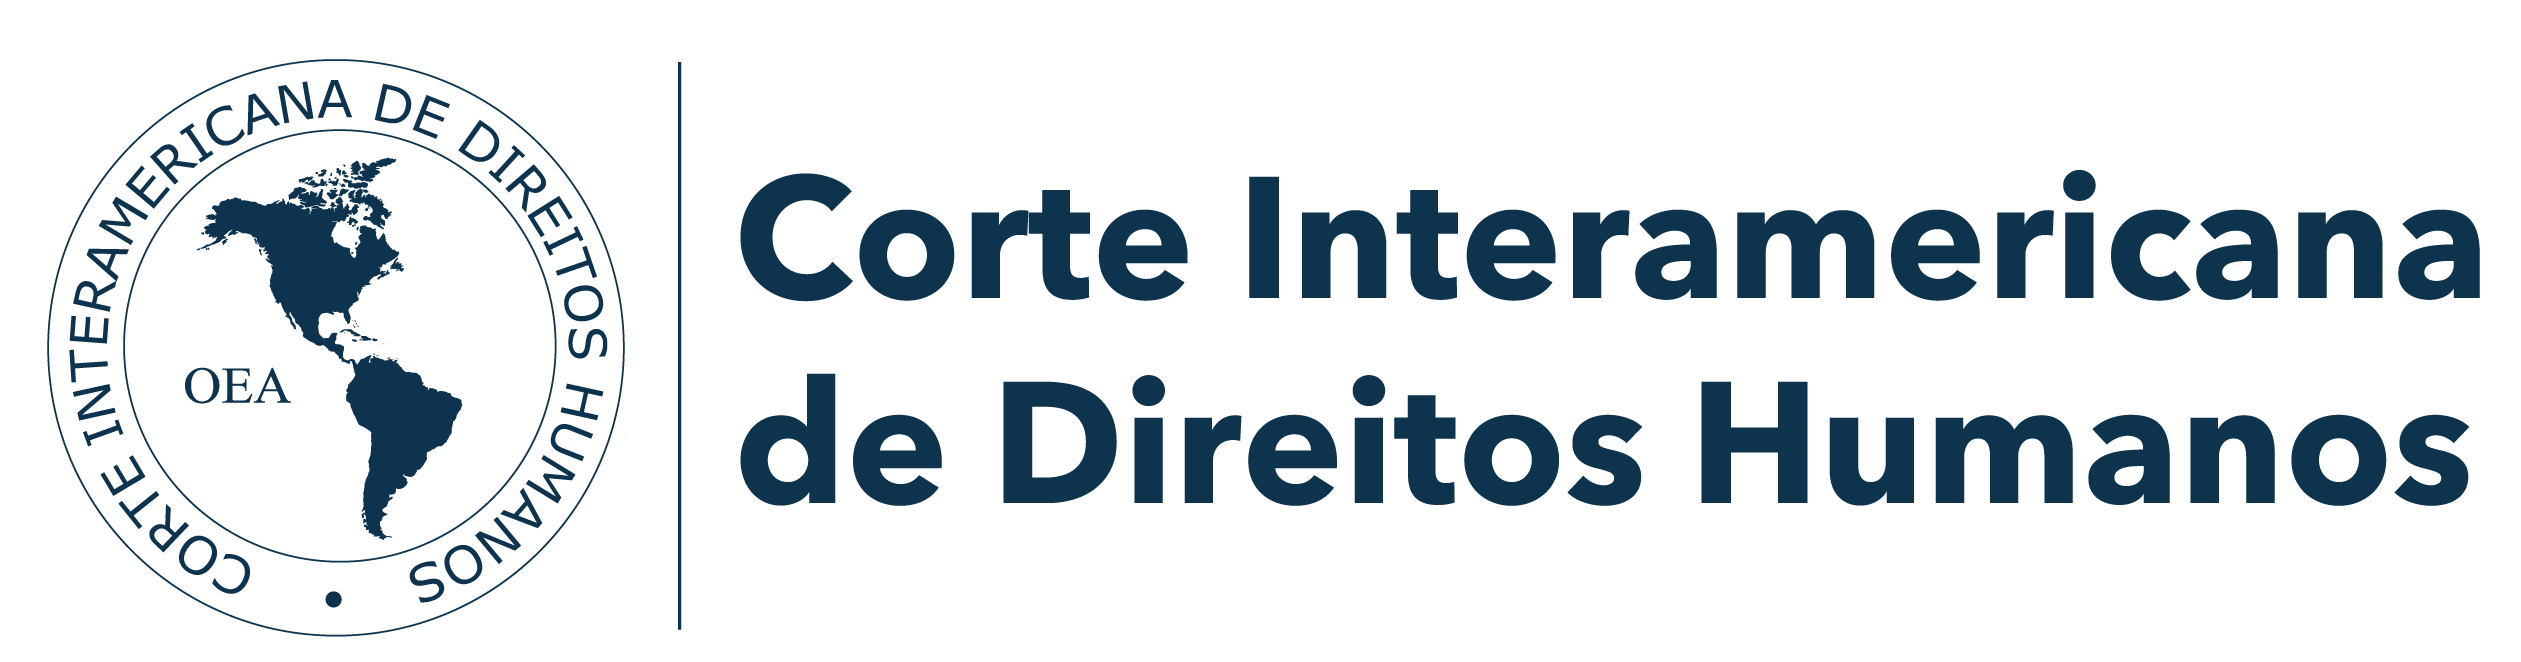 Logo Corte Interamericana de Direitos Humanos